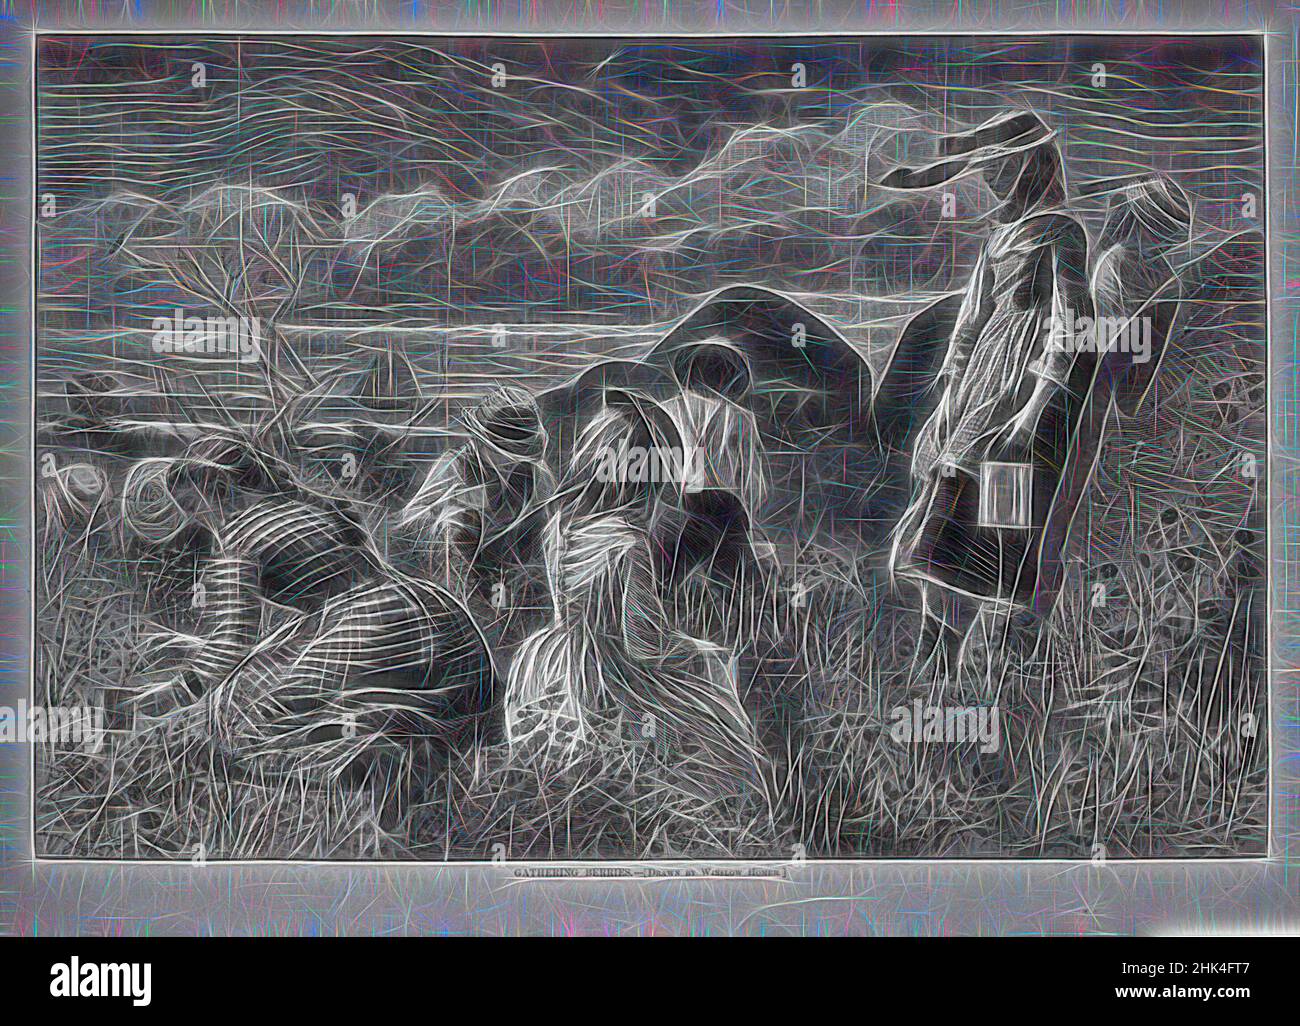 Inspiré par la cueillette de baies, Winslow Homer, américain, 1836-1910, gravure de bois, 1874, image: 9 1/8 x 13 1/2 po., 23,2 x 34,3 cm, repensé par Artotop. L'art classique réinventé avec une touche moderne. Conception de lumière chaleureuse et gaie, de luminosité et de rayonnement de lumière. La photographie s'inspire du surréalisme et du futurisme, embrassant l'énergie dynamique de la technologie moderne, du mouvement, de la vitesse et révolutionne la culture Banque D'Images